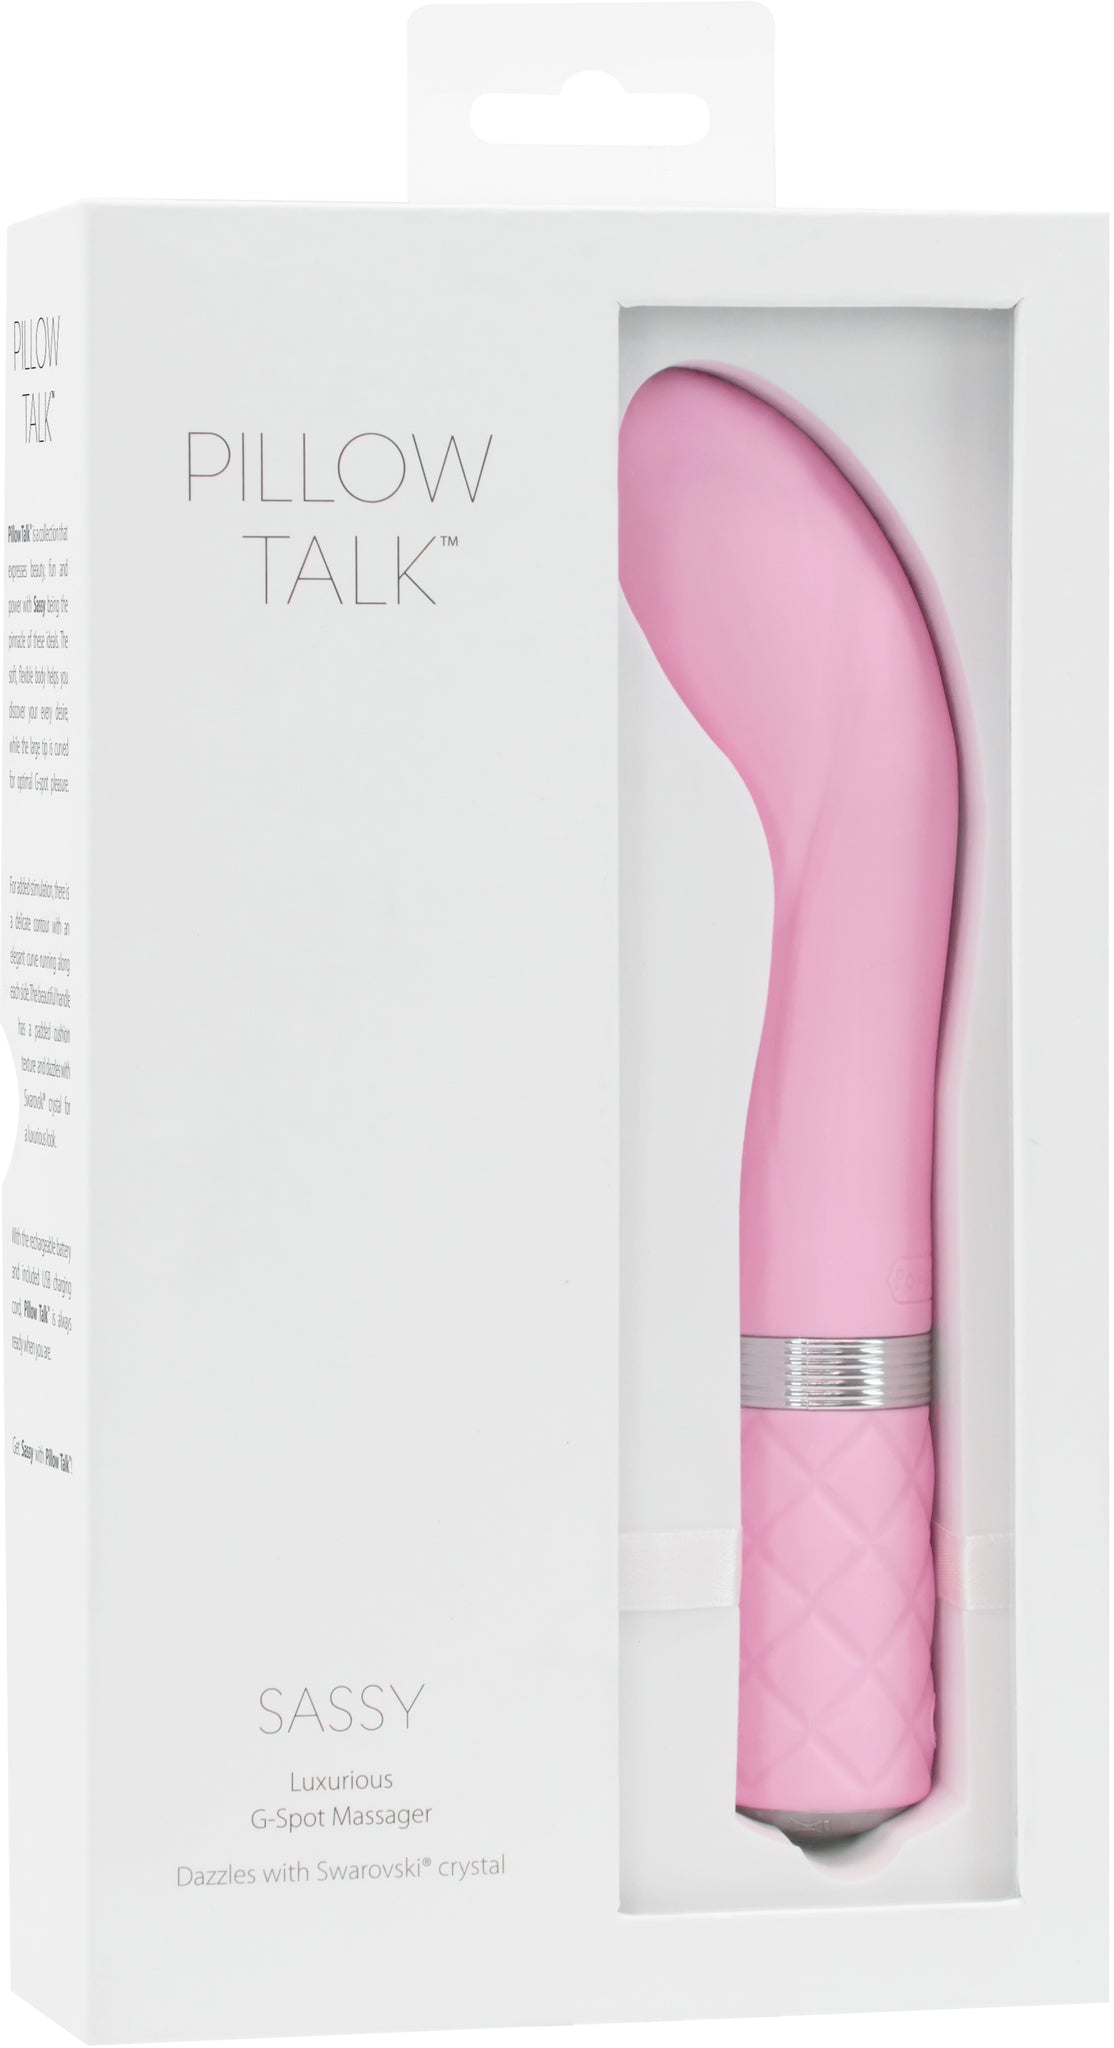 Pillow Talk Sassy G-Spot Vibrator in its box (pink).